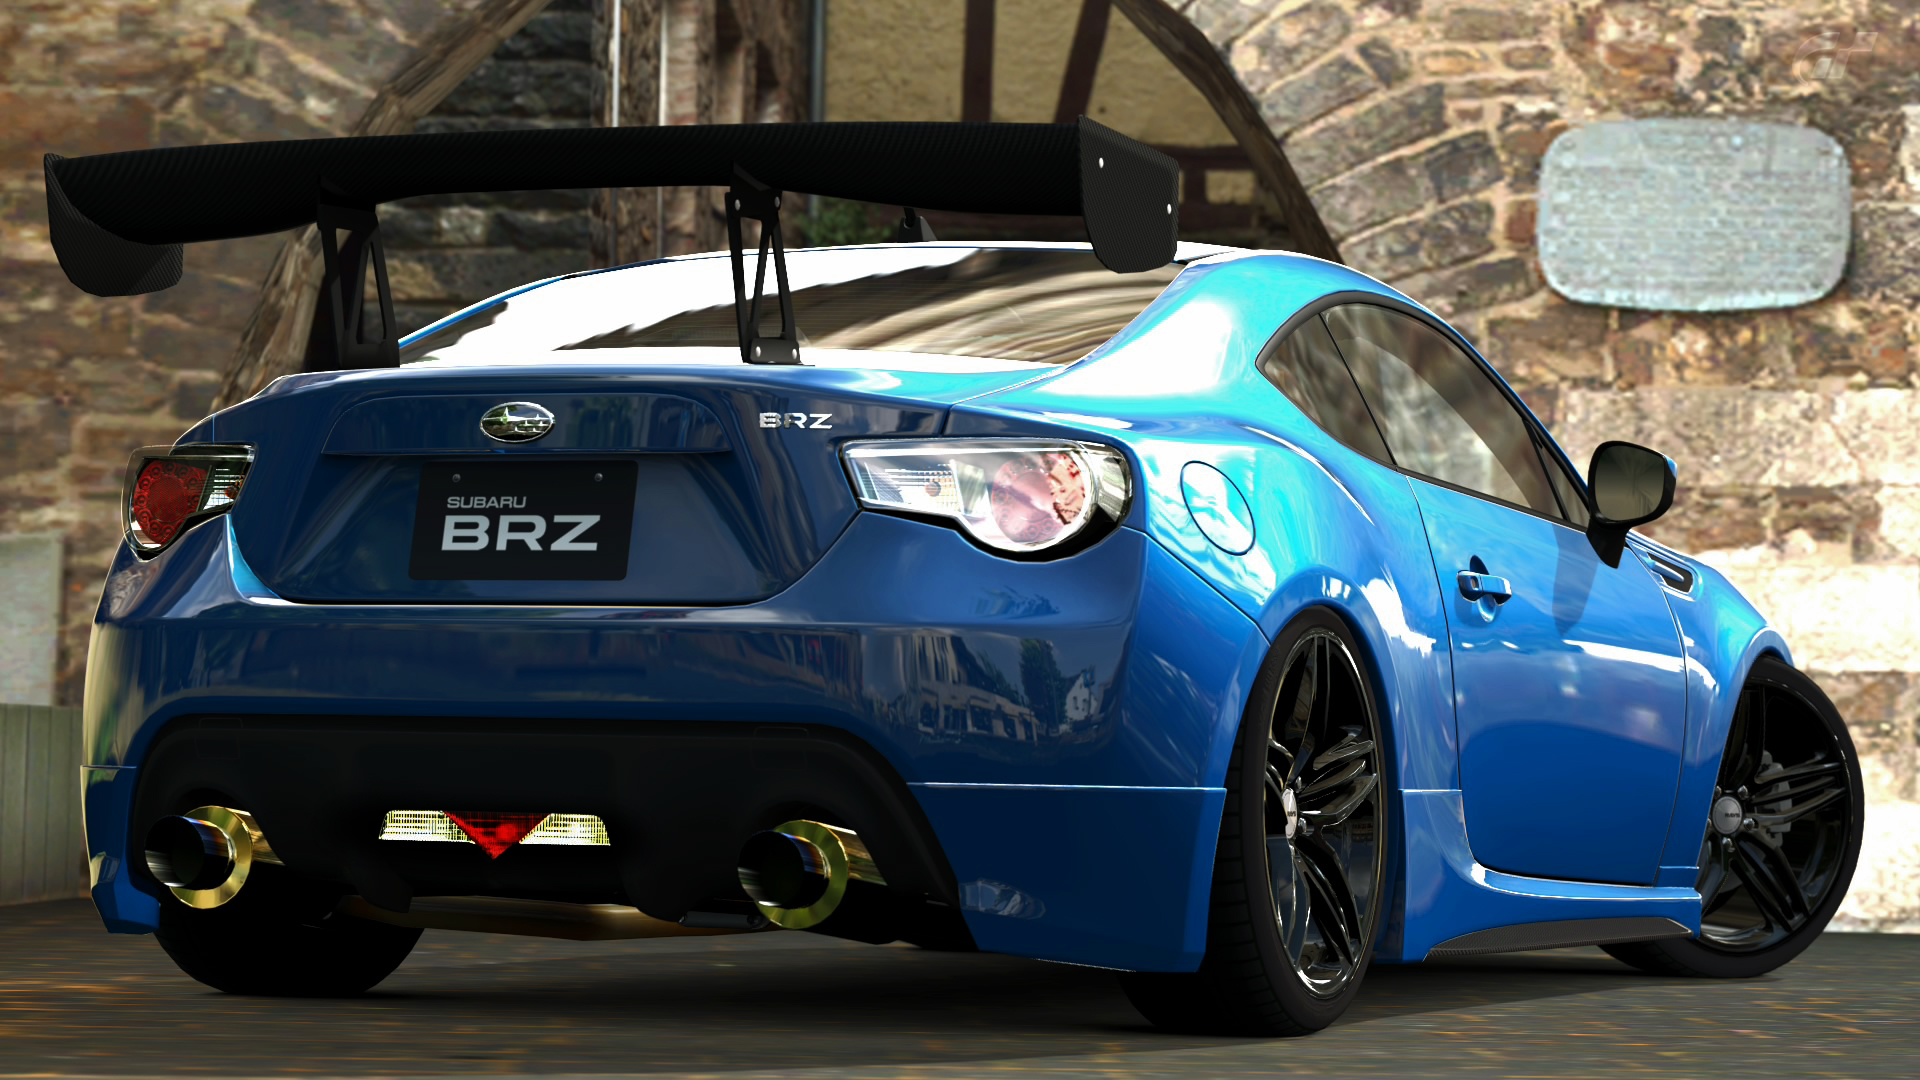 2012 Subaru BRZ S (Gran Turismo 5) by Vertualissimo on